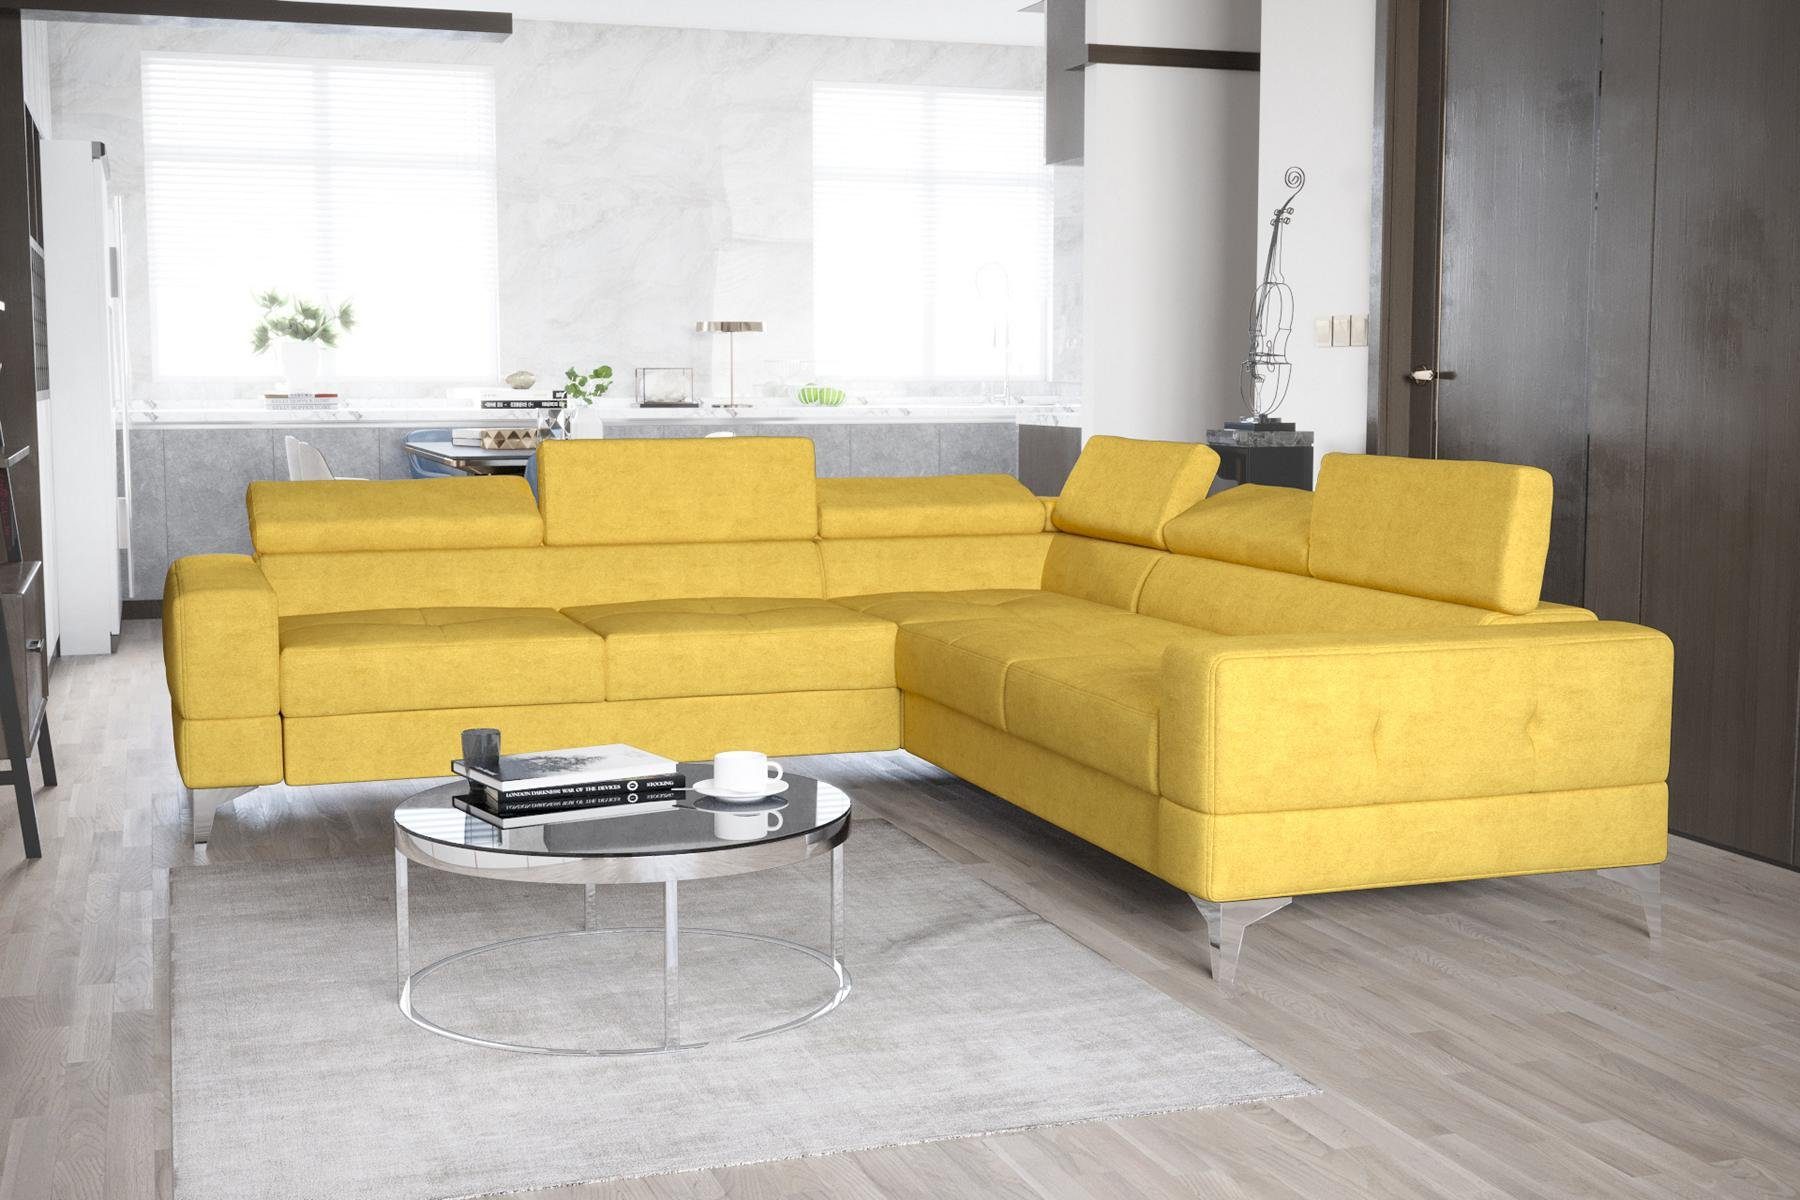 JVmoebel Ecksofa, Ecksofa Wohnzimmer L Form Sofas Couch Design Polsterung Textil Gelb